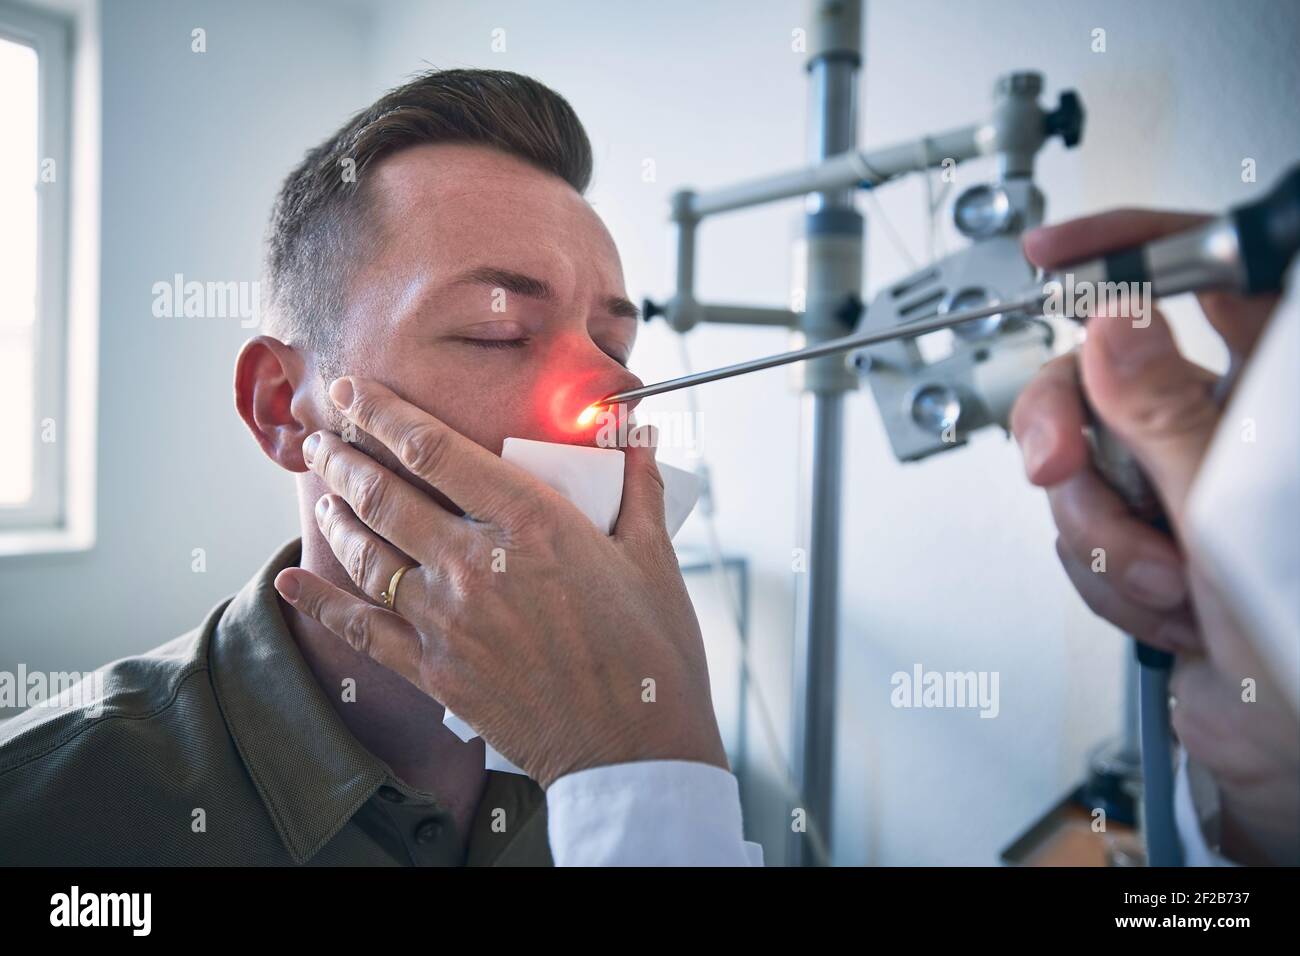 Patient in der HNO-Klinik. Facharzt - Otolaryngologe tun Nase Untersuchung des jungen Mannes. Stockfoto